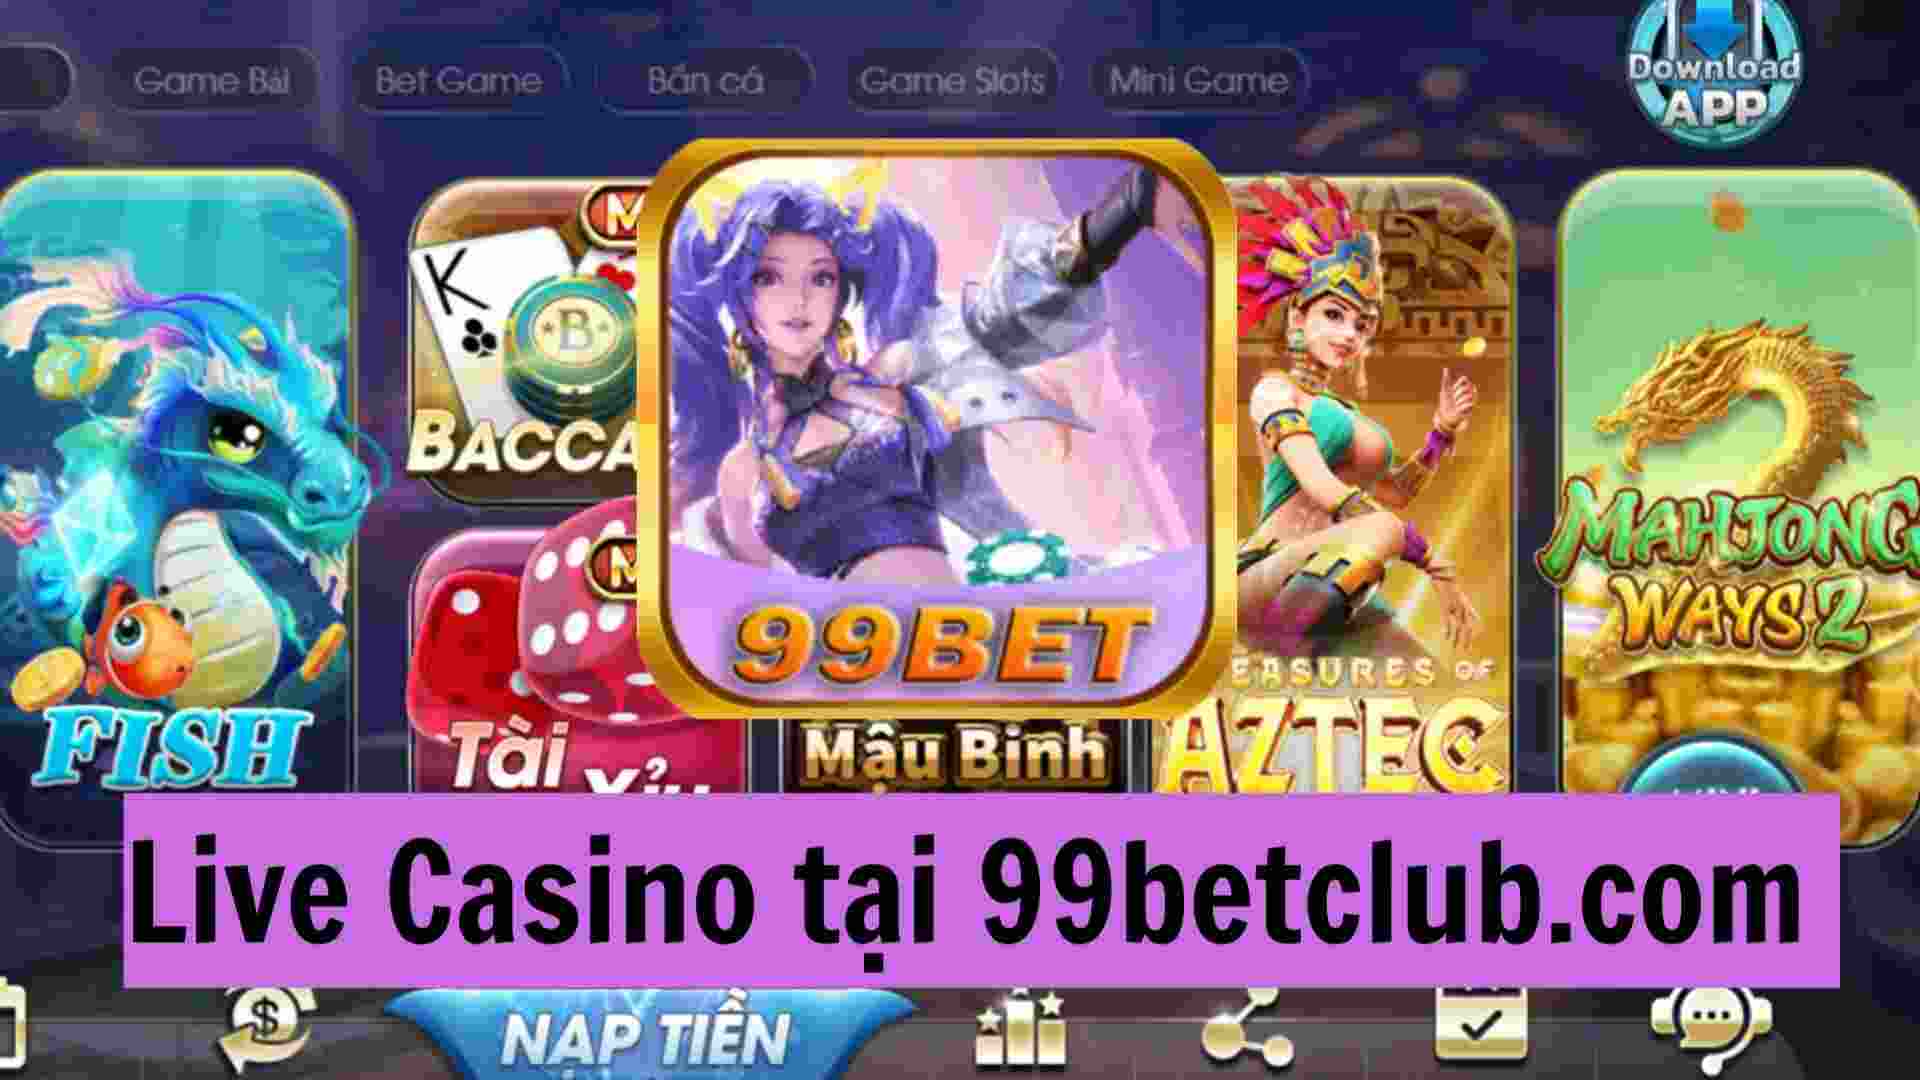 live-casino-tai-99betclub.jpg